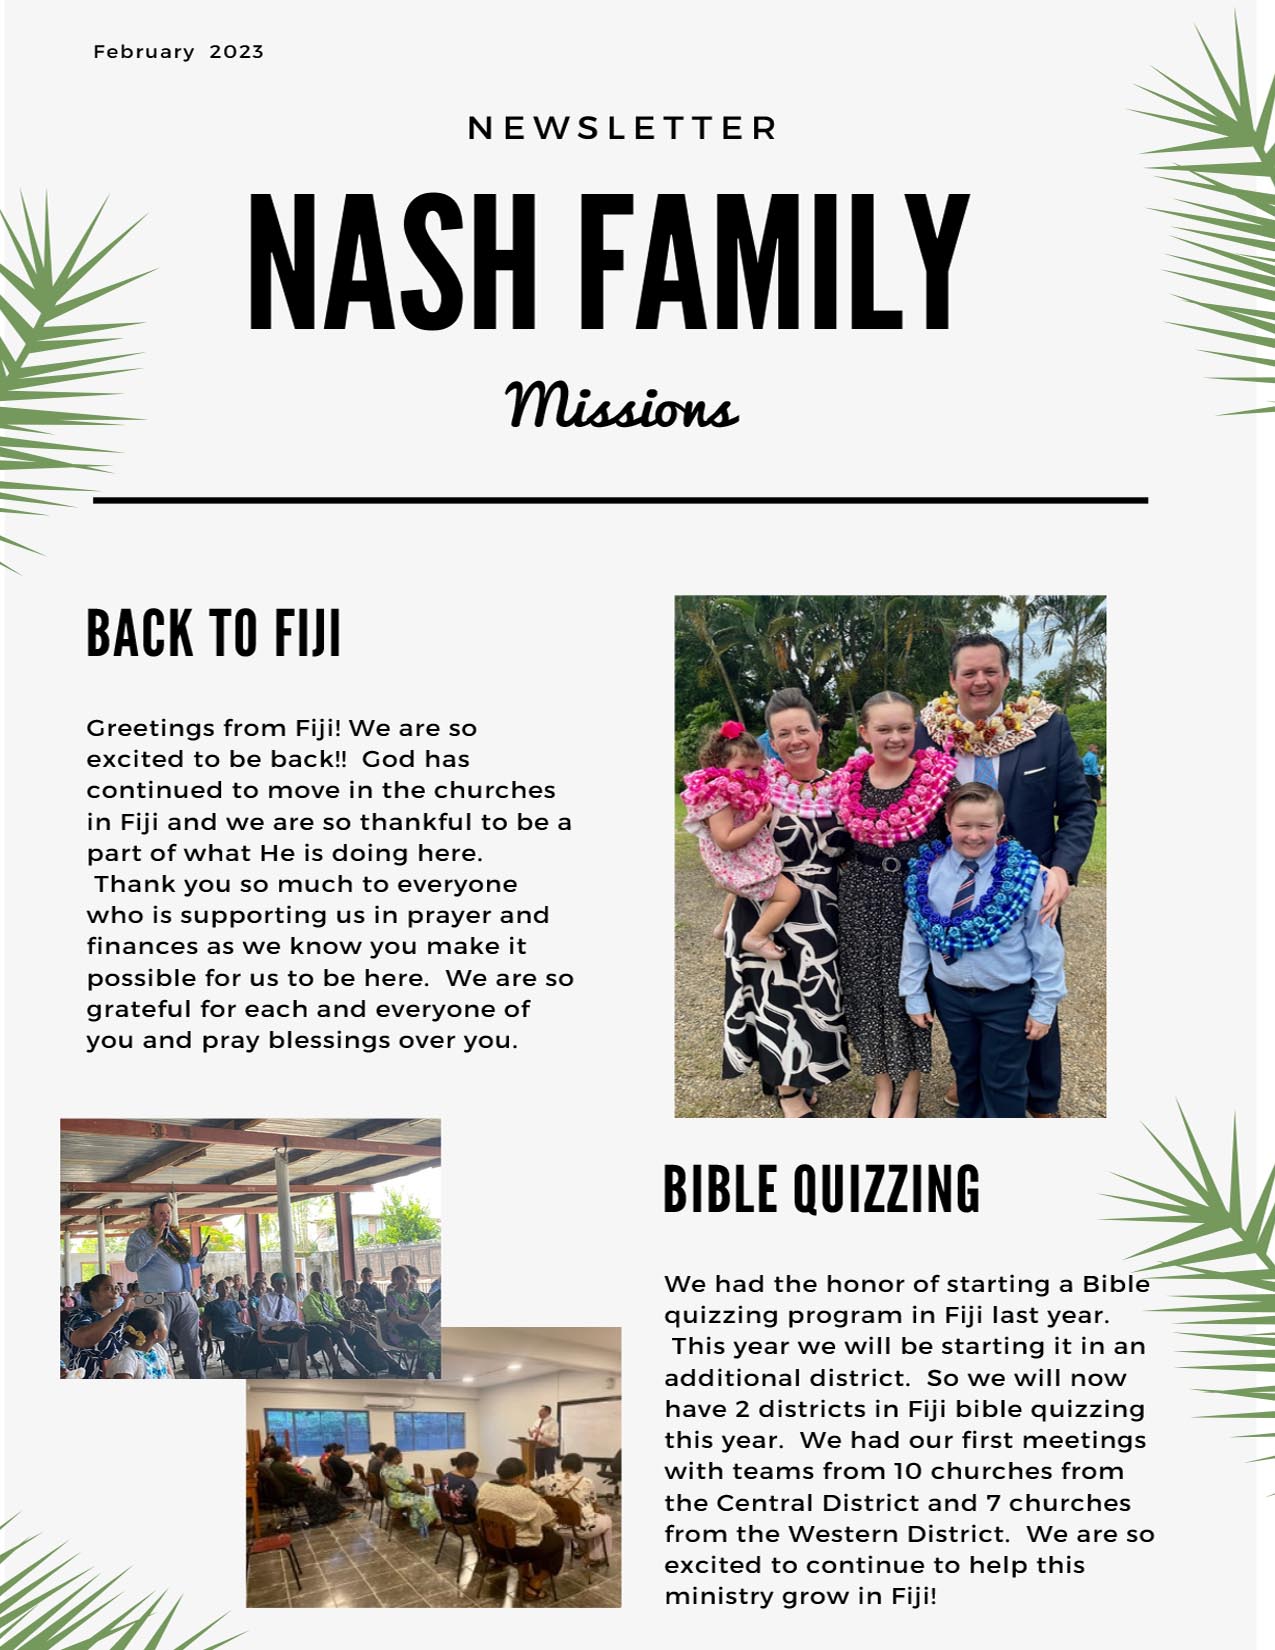 family reunion newsletter